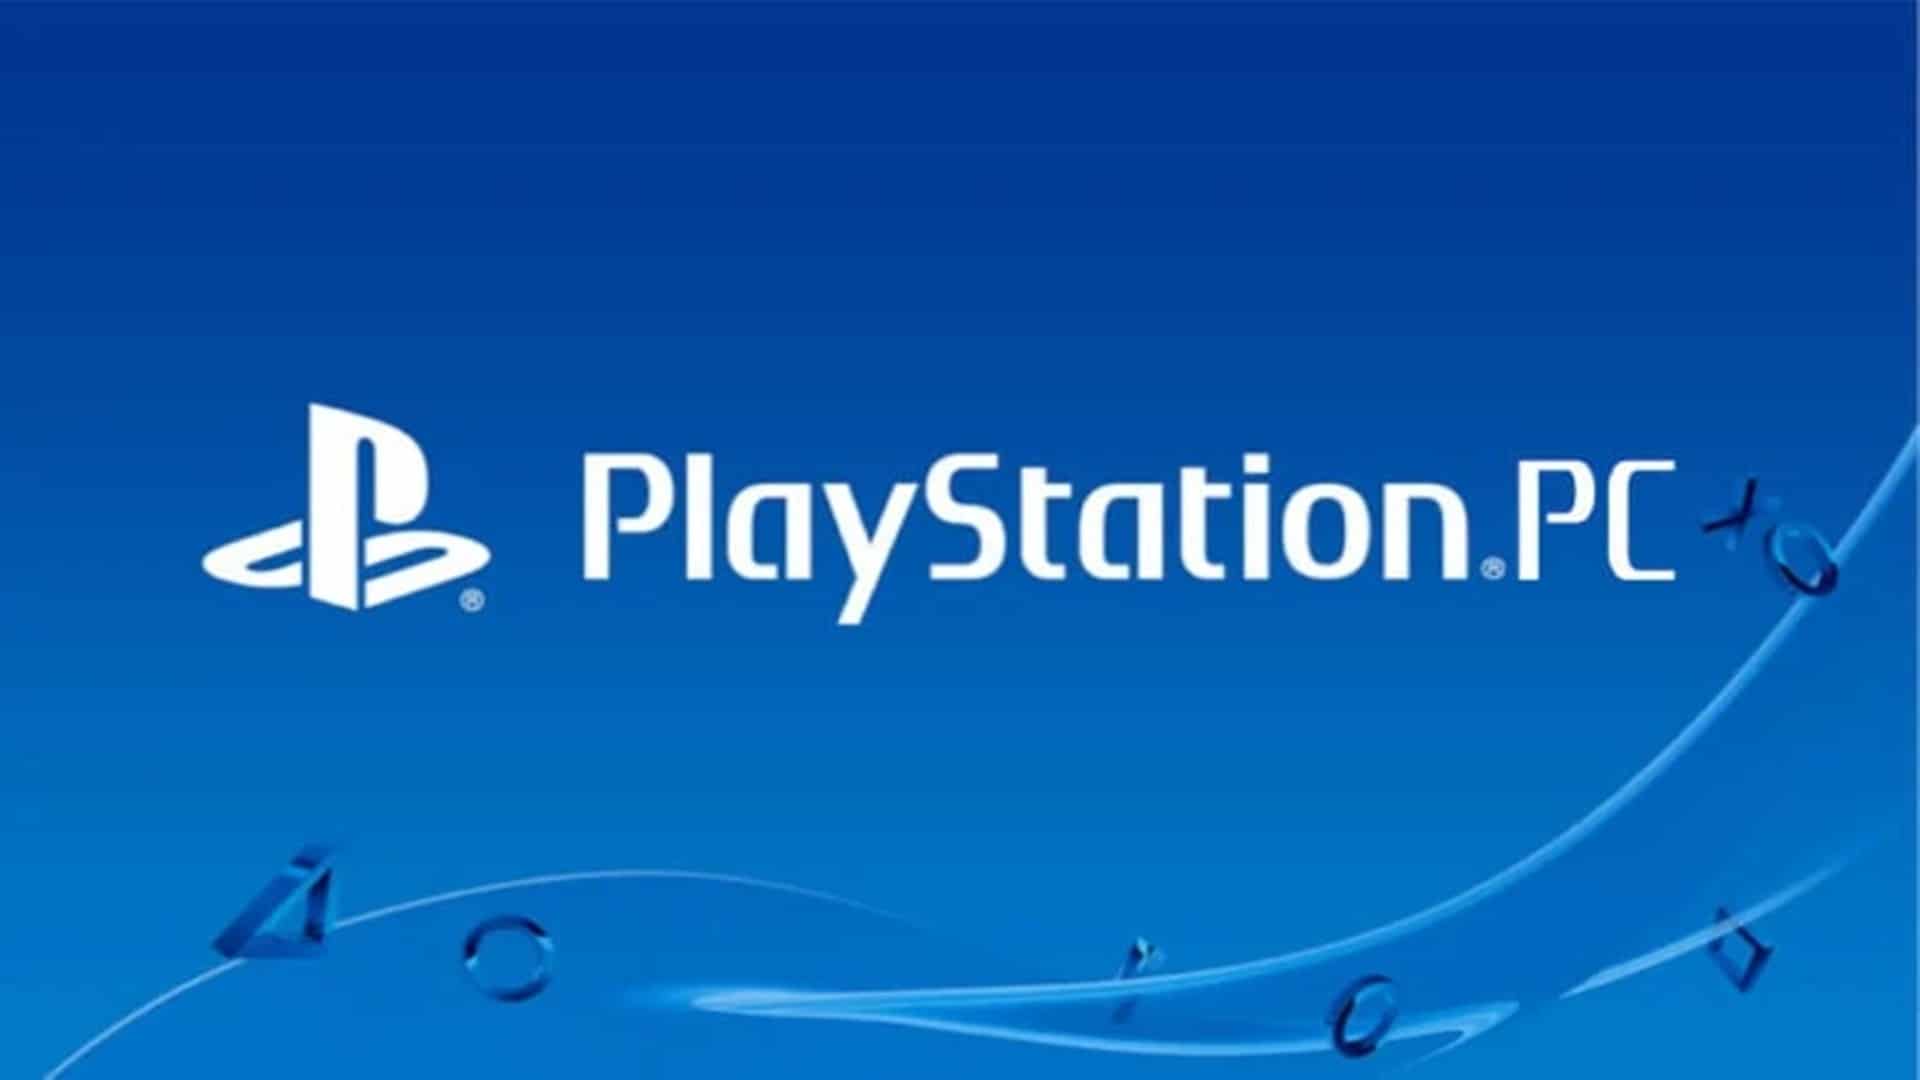 2 juegos más de PlayStation podrían llegar a PC, GamersRD